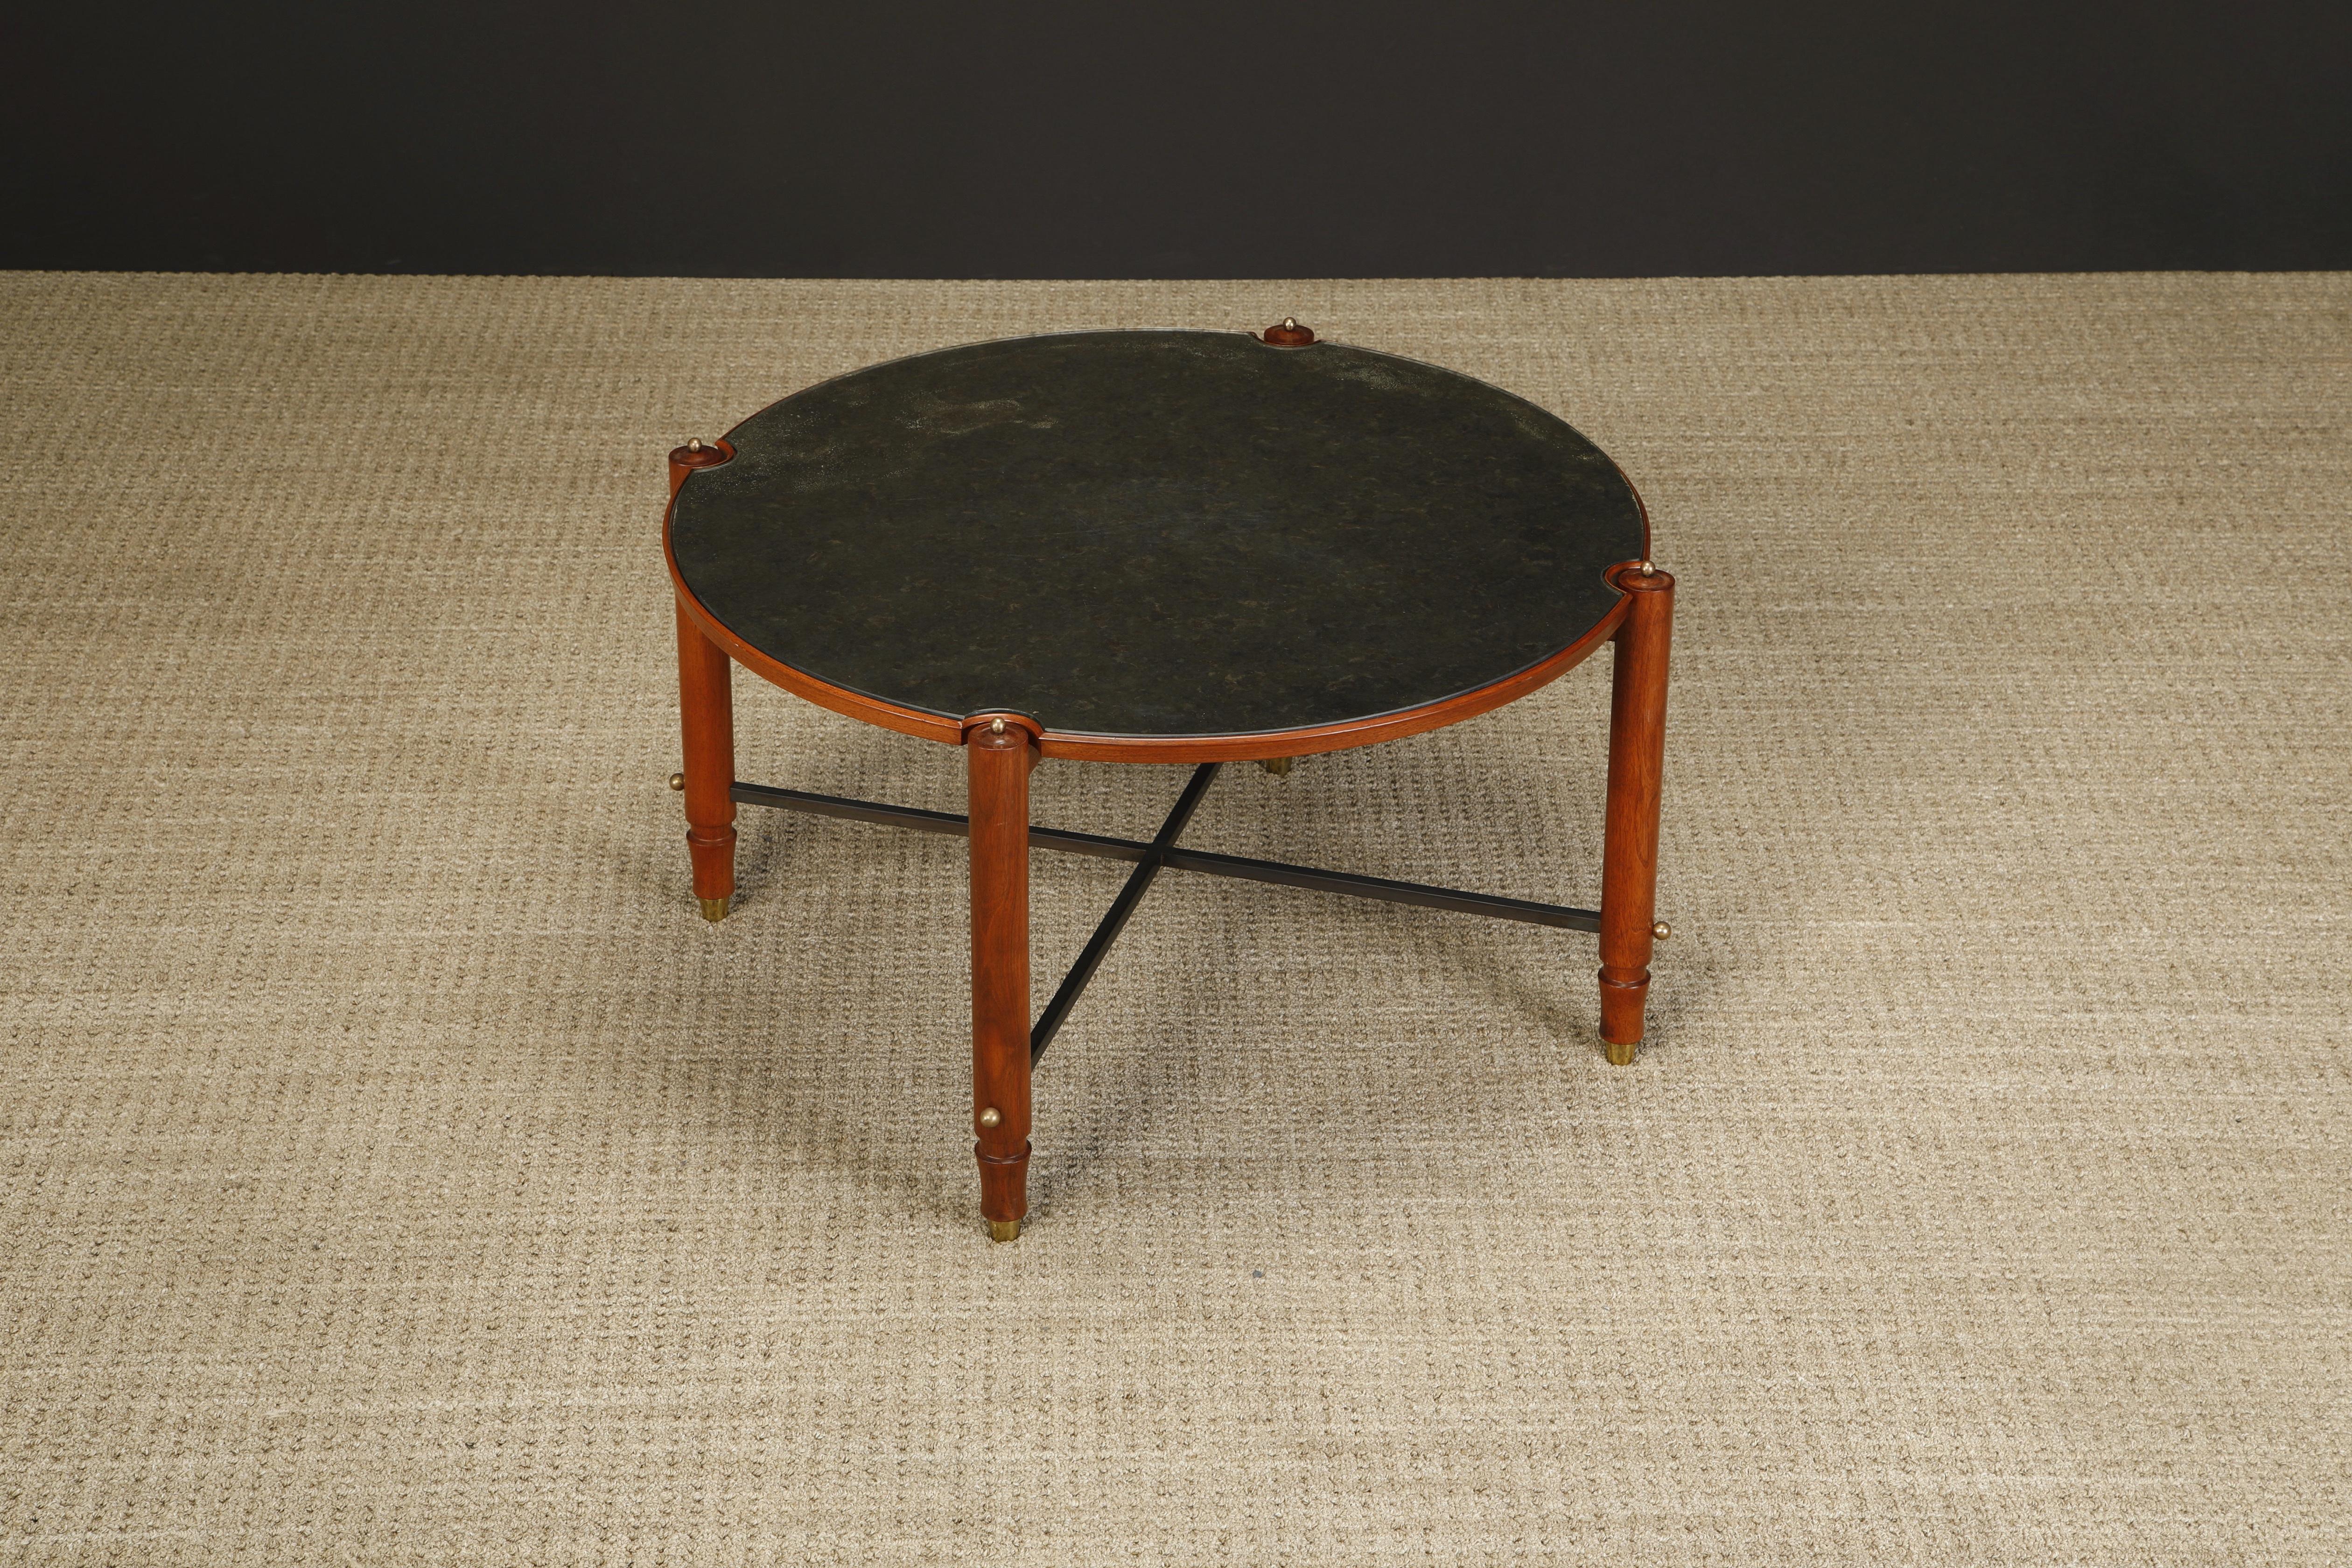 Cette table basse exquise de Jules Leleu a été exécutée en France vers 1957. Elle est en acajou avec des châssis en métal patiné, des accents en laiton et un plateau en verre miroité antiquité. Documentée dans Leleu Decorateurs Ensembliers par